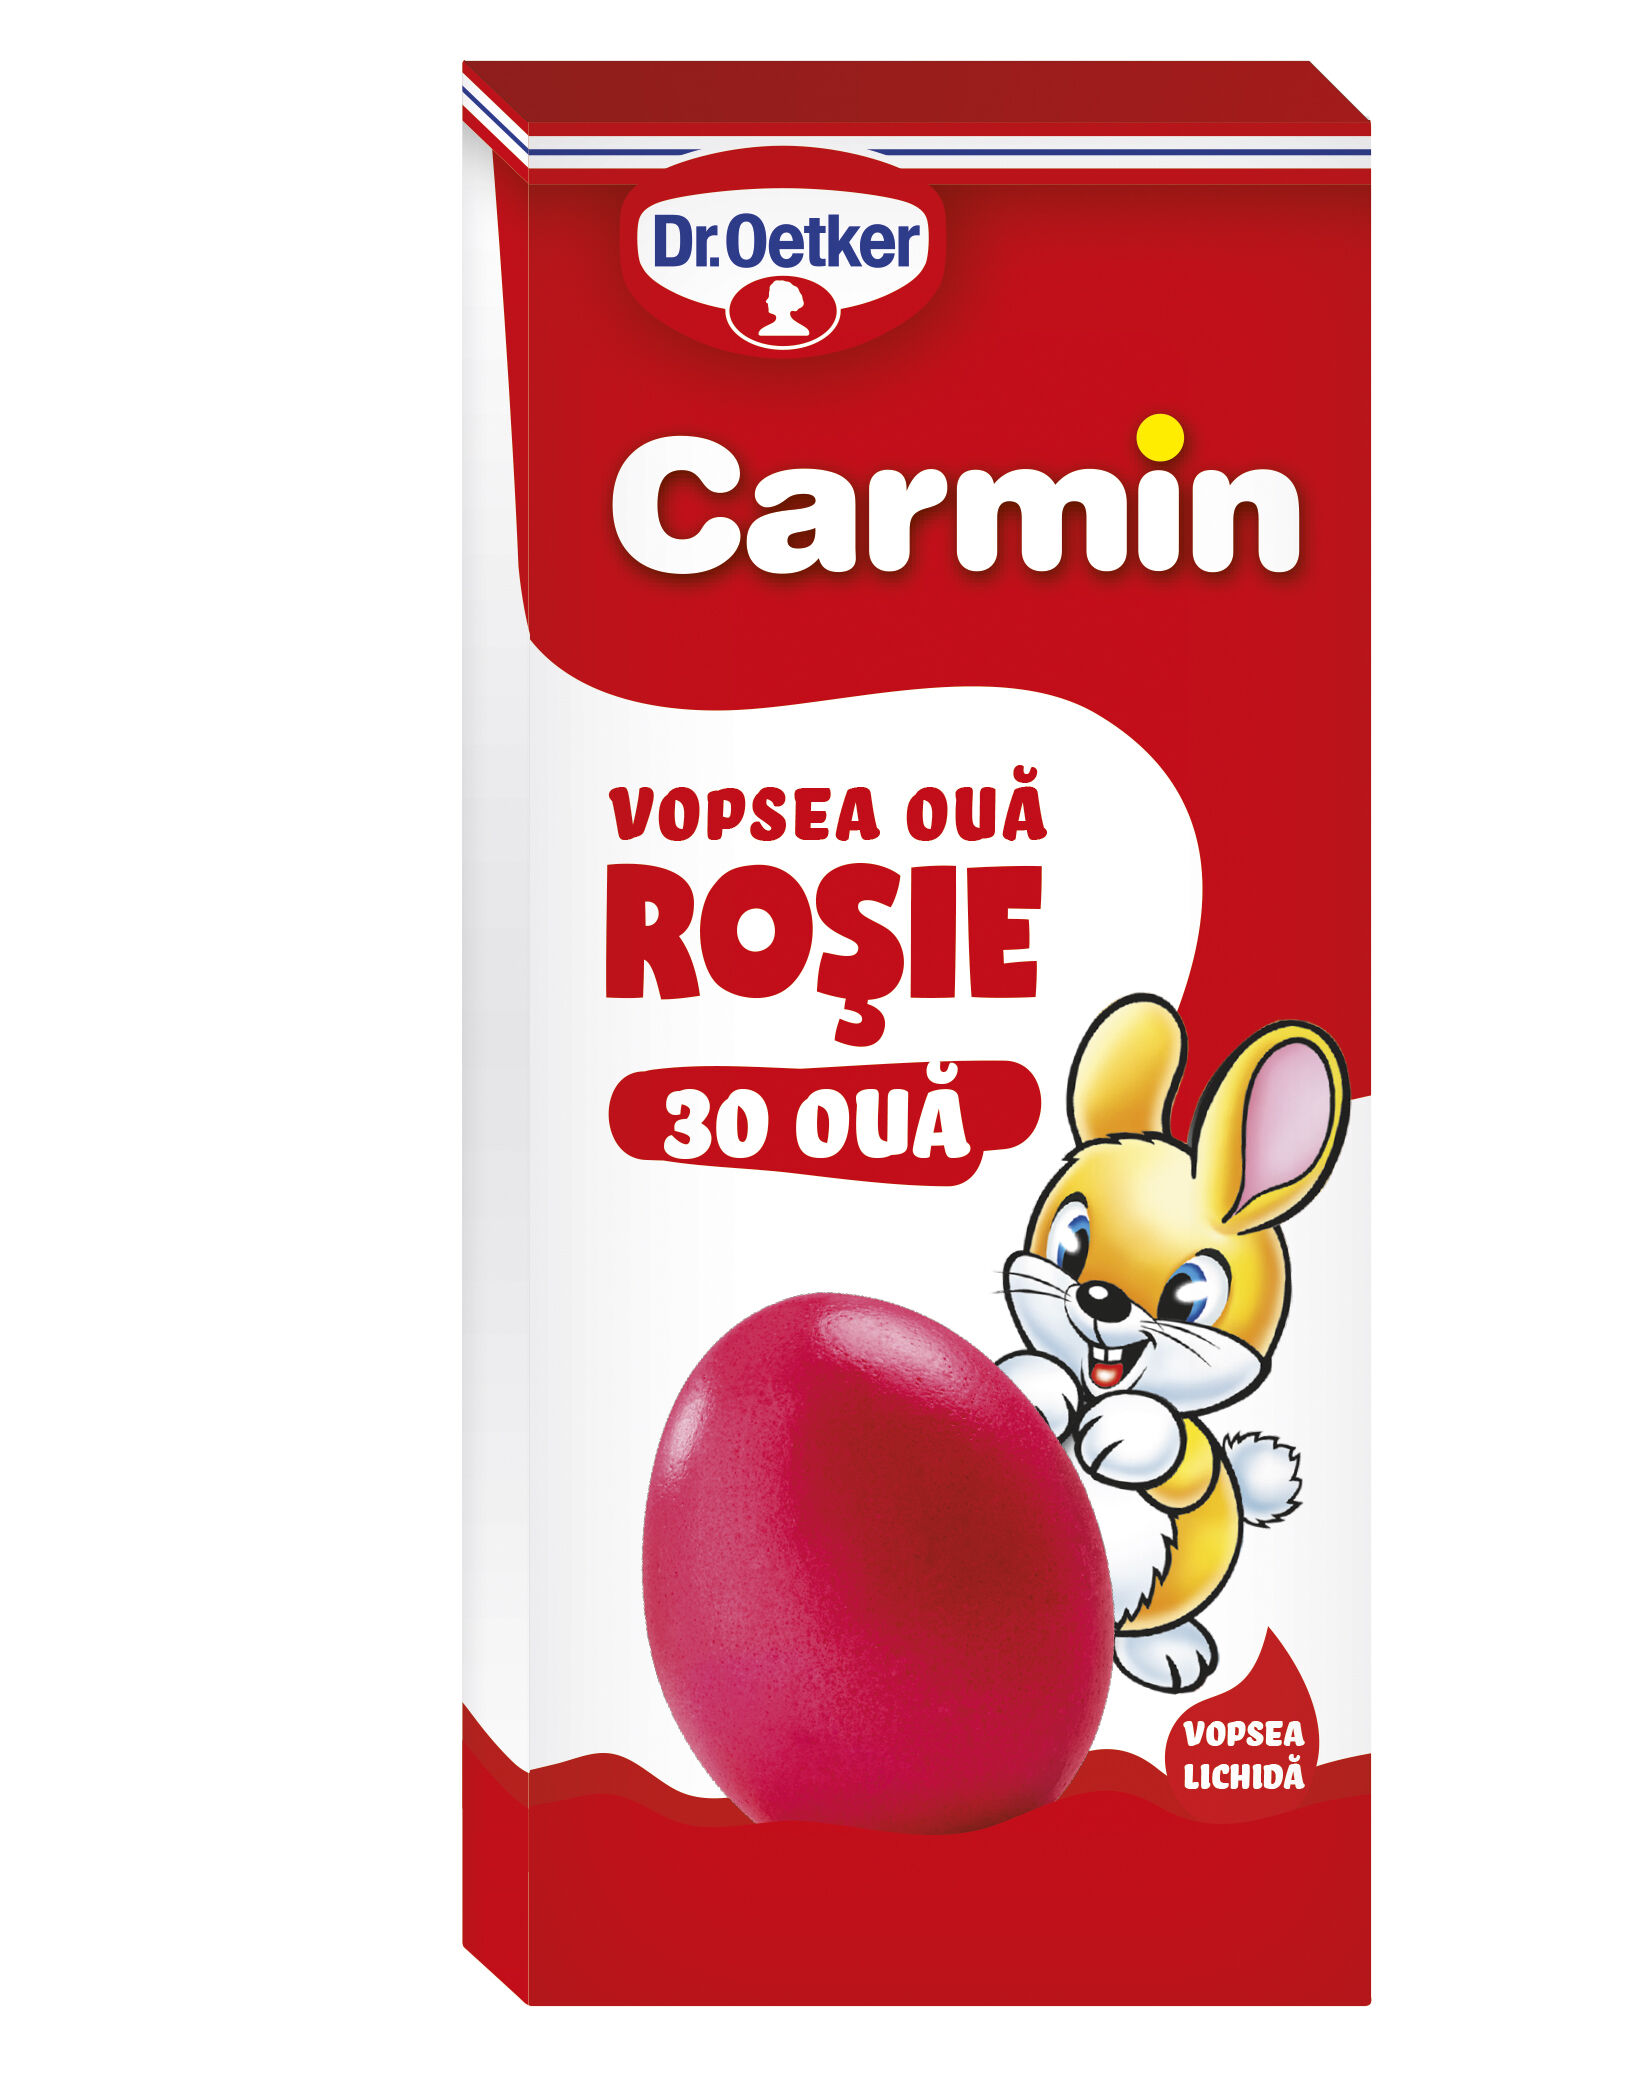 Vopsea lichida rosu Carmin pentru 30 oua